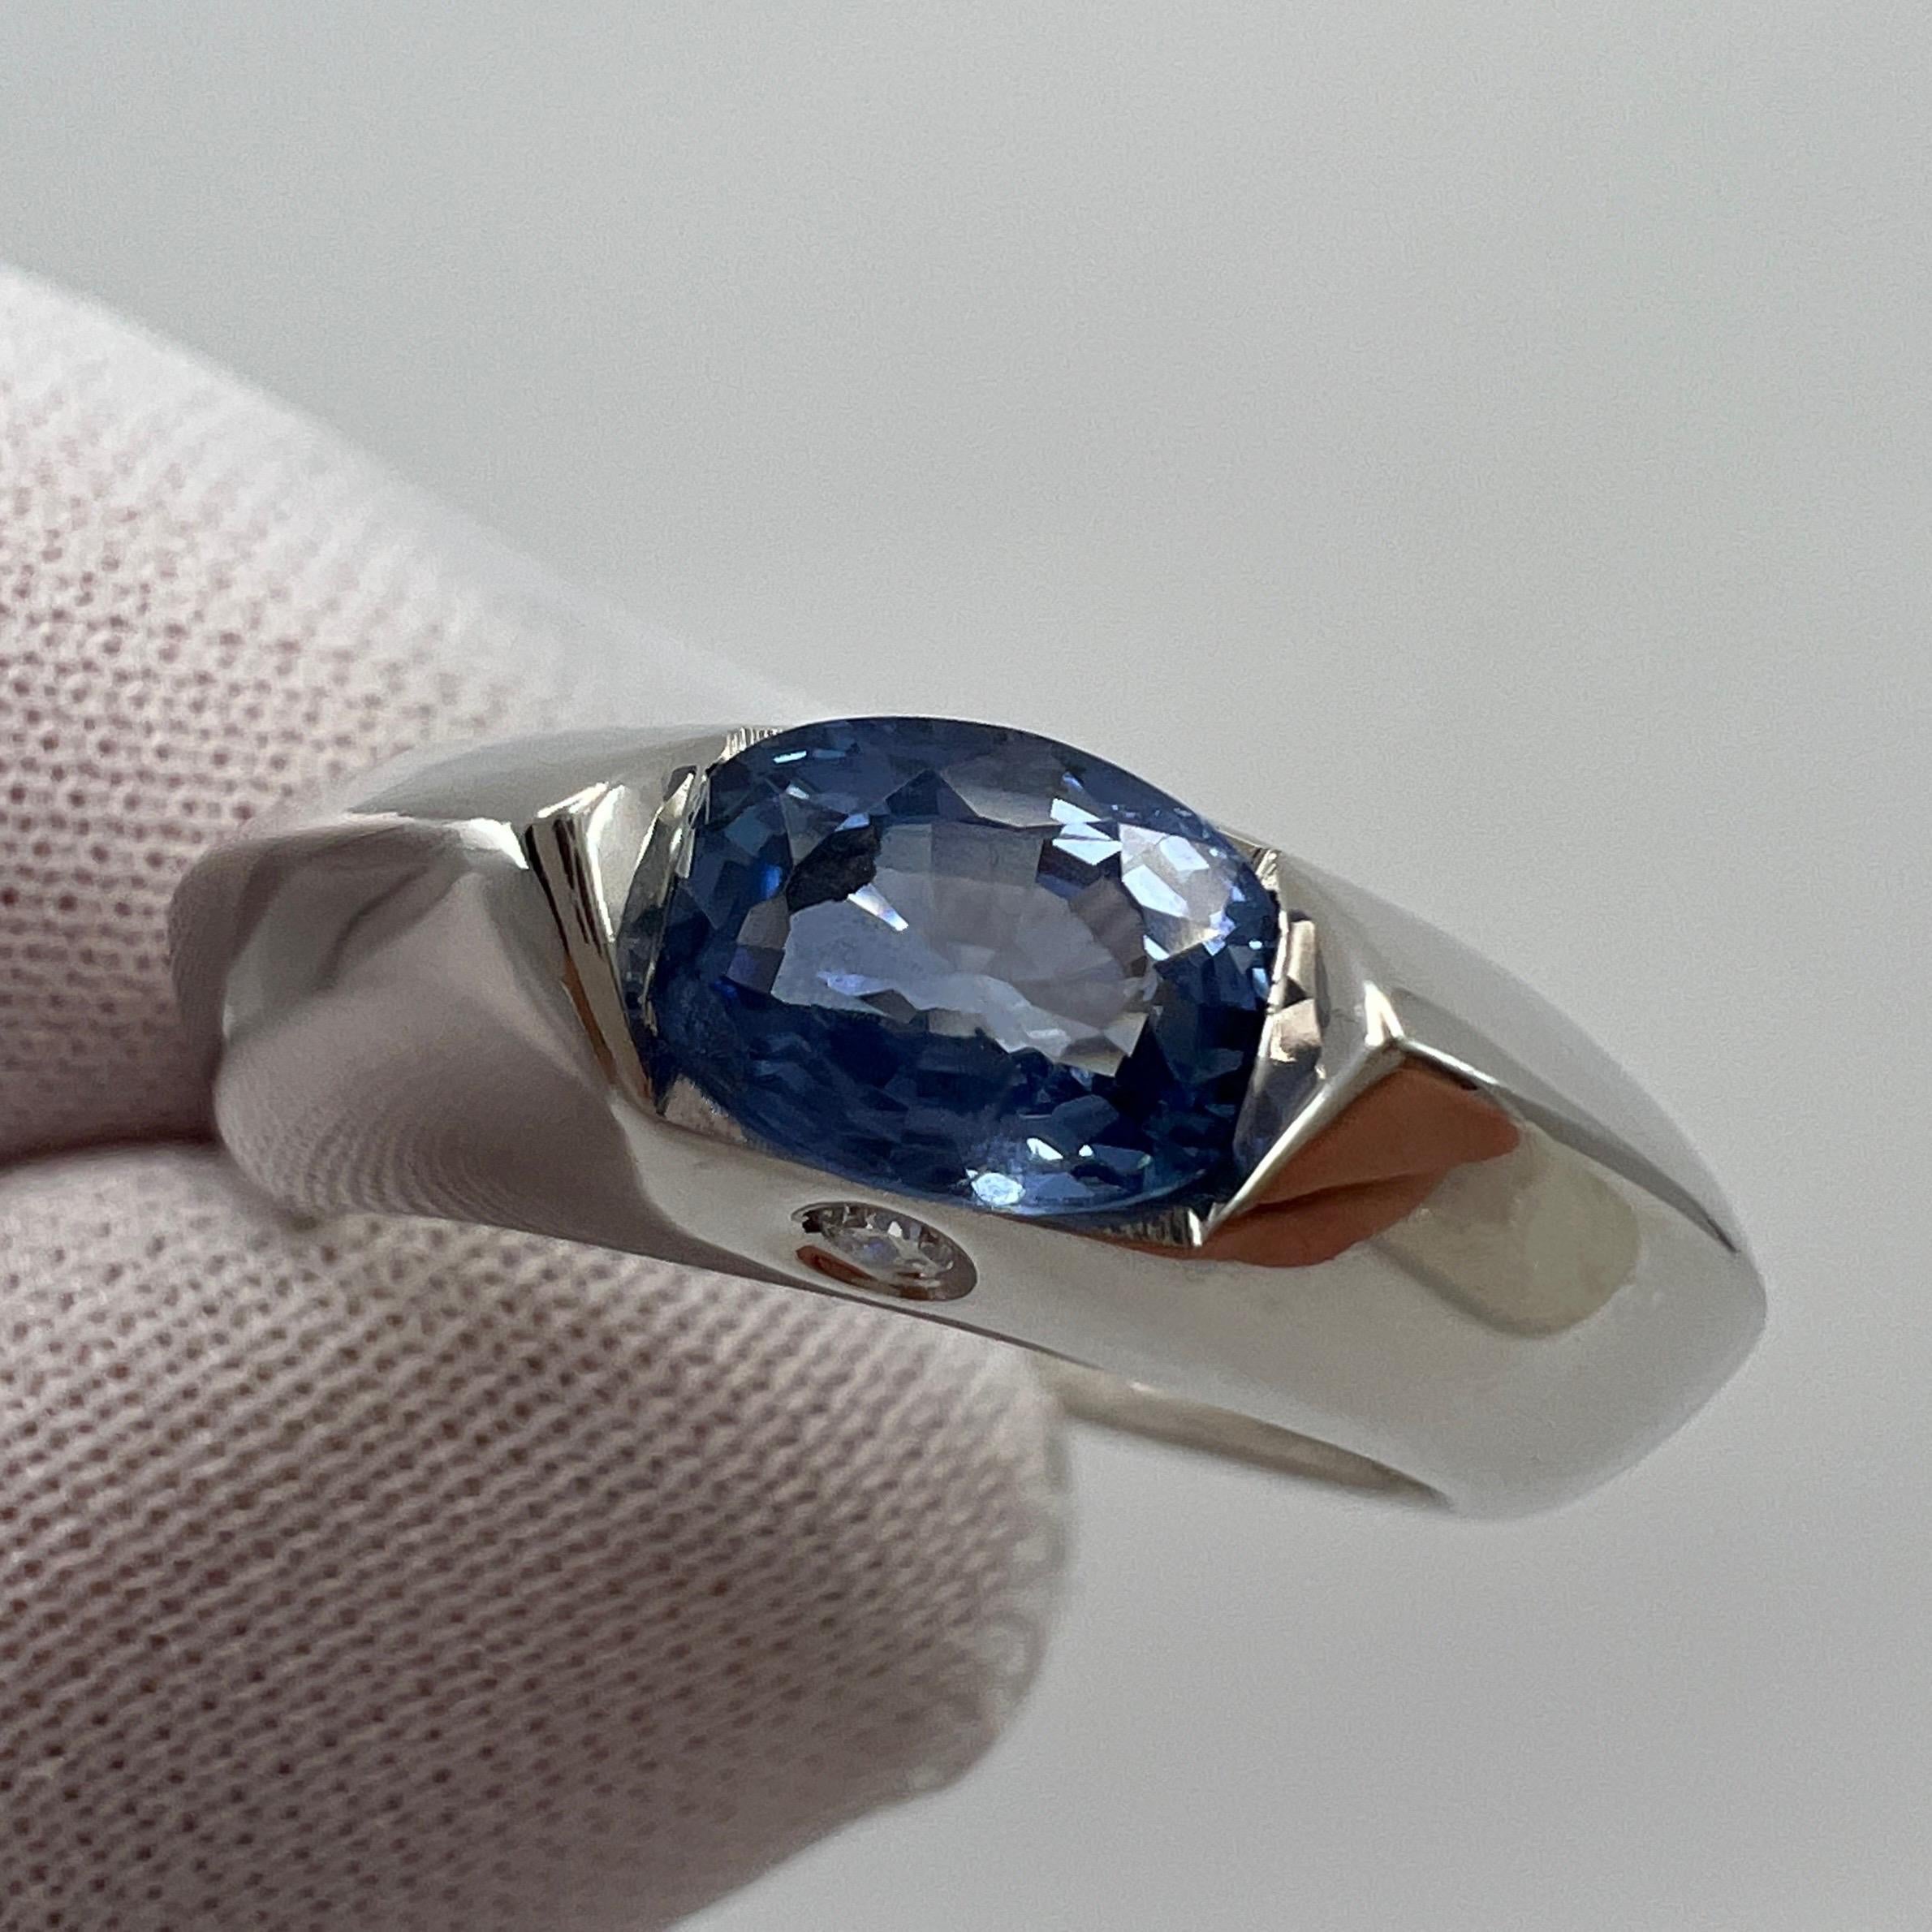 Vintage Piaget Blue Sapphire & Diamond 18k White Gold Ring.

Whiting bague PIAGET en or blanc sertie d'un magnifique saphir de taille ovale d'une belle couleur bleu vif, de très bonne taille et de bonne clarté. Quelques petites inclusions dans la